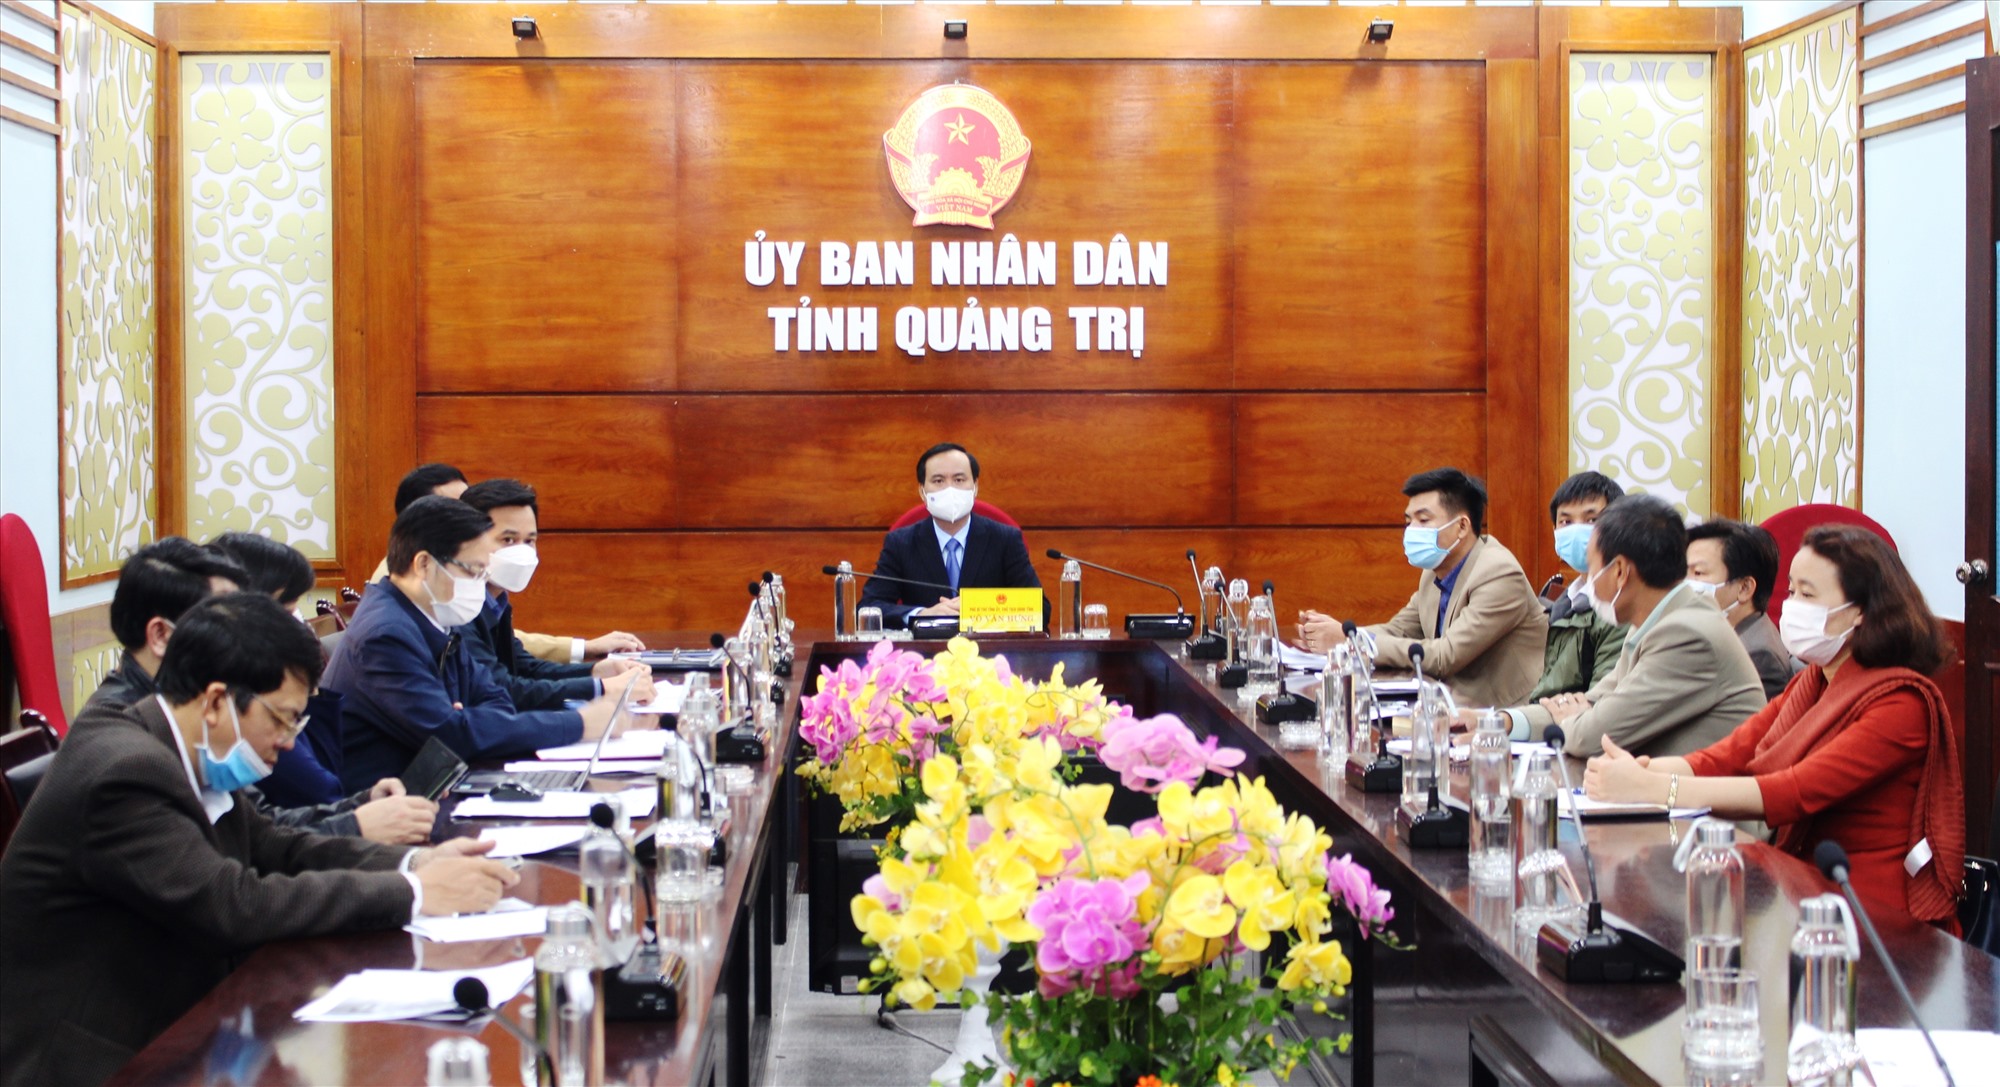 Chủ tịch UBND tỉnh Võ Văn Hưng và các đại biểu tham dự diễn đàn tại điểm cầu Quảng Trị - Ảnh: T.T